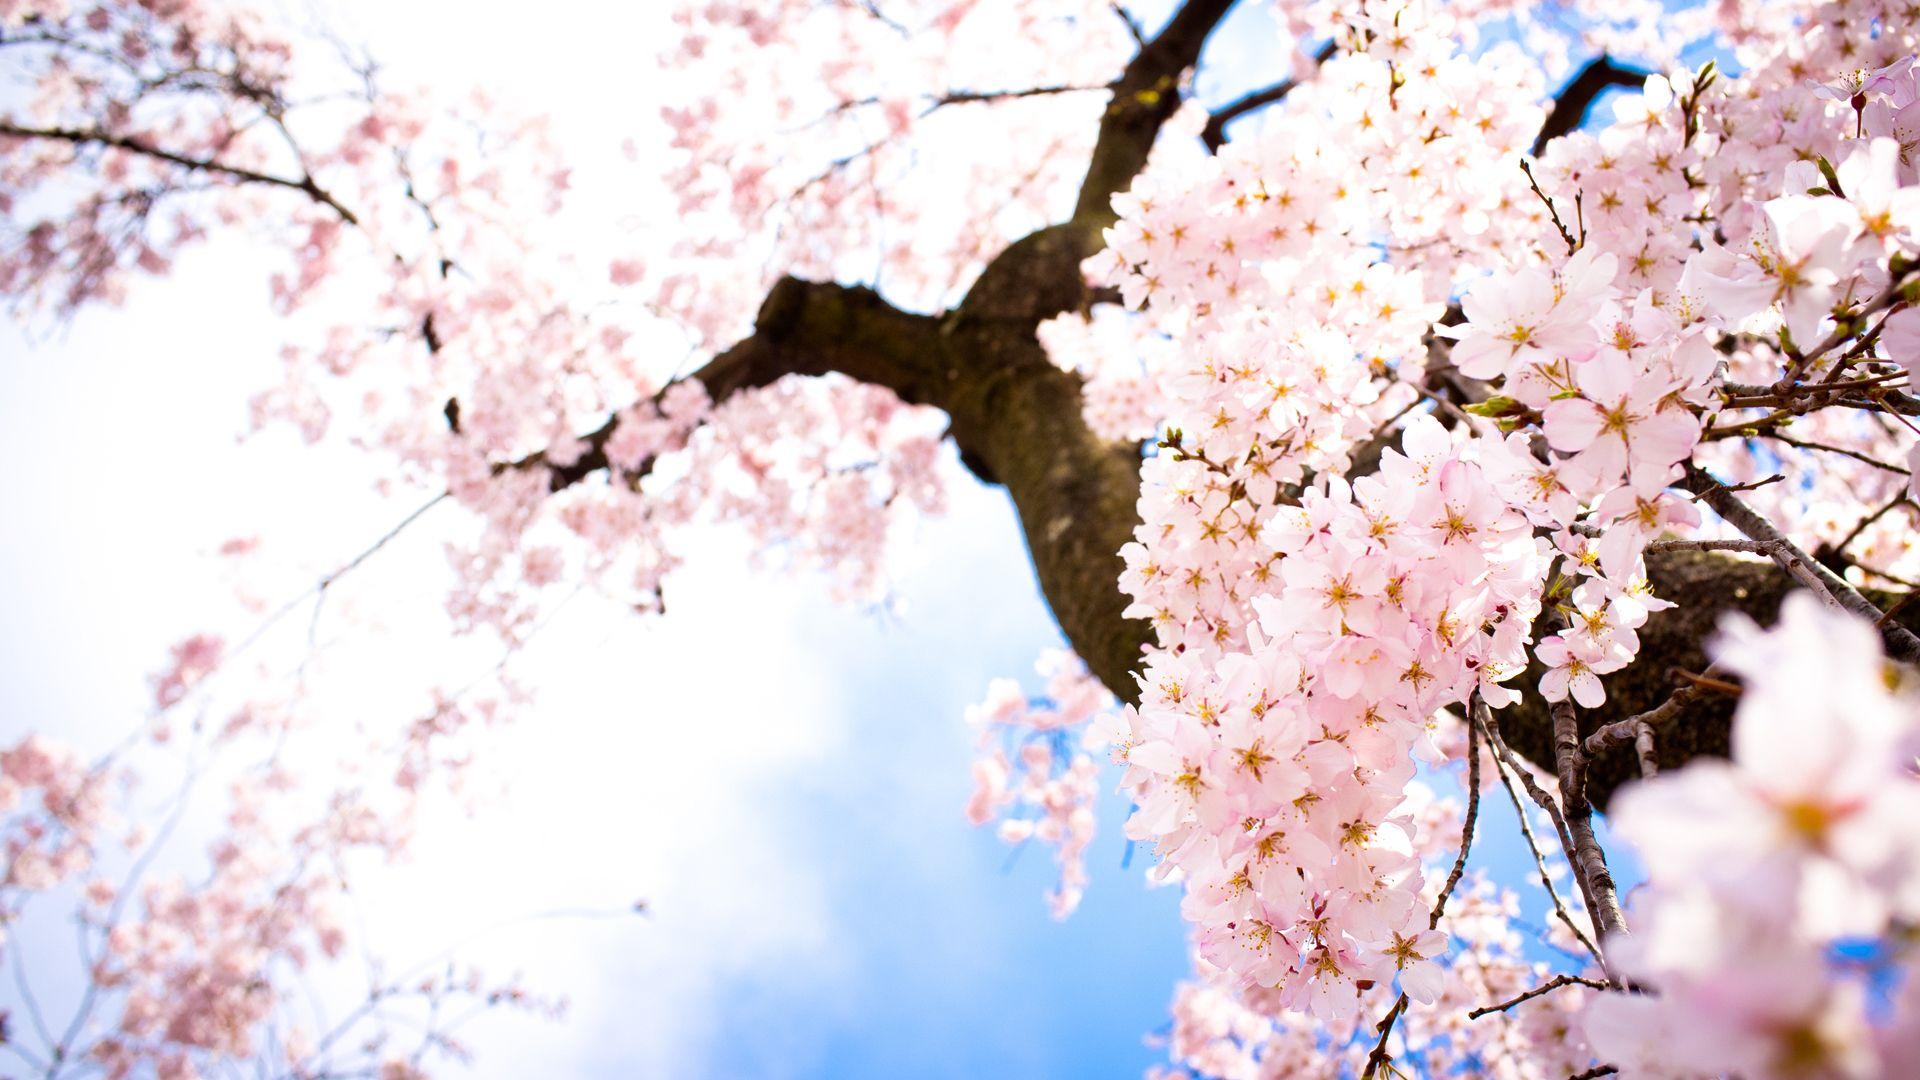 Astounding HD cherry blossom sakura widescreen wallpaper